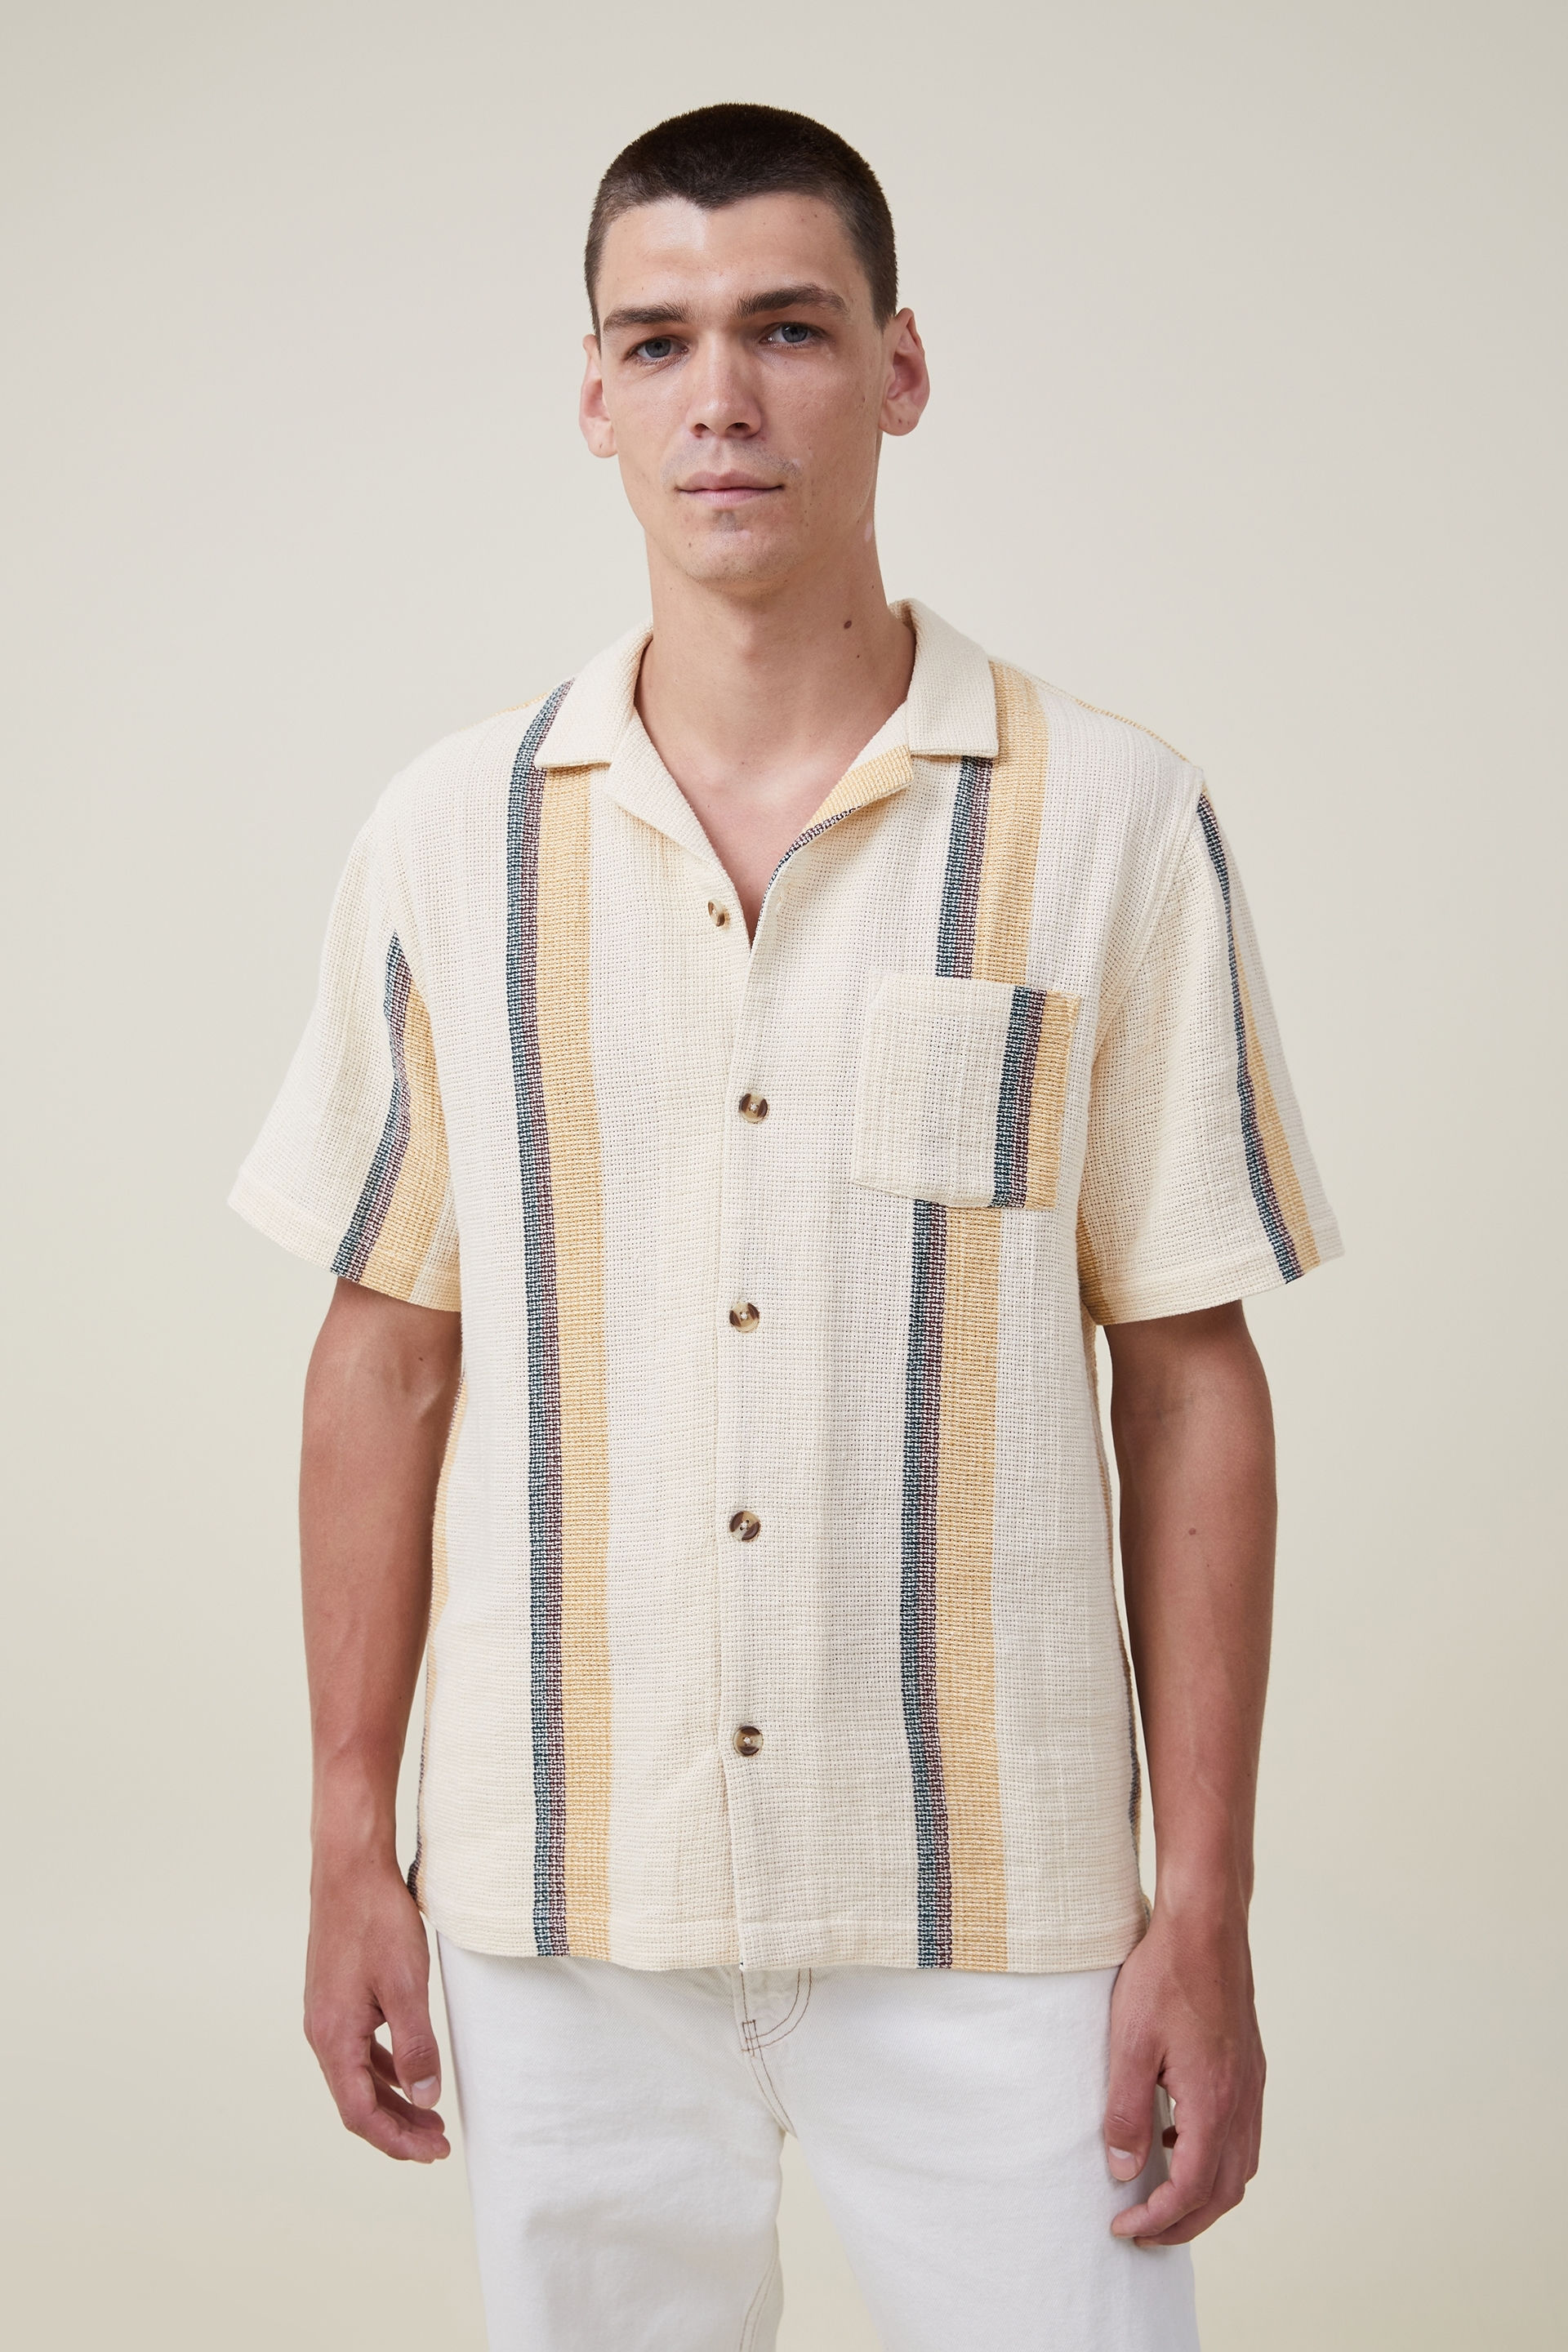 Palma Short Sleeve Shirt